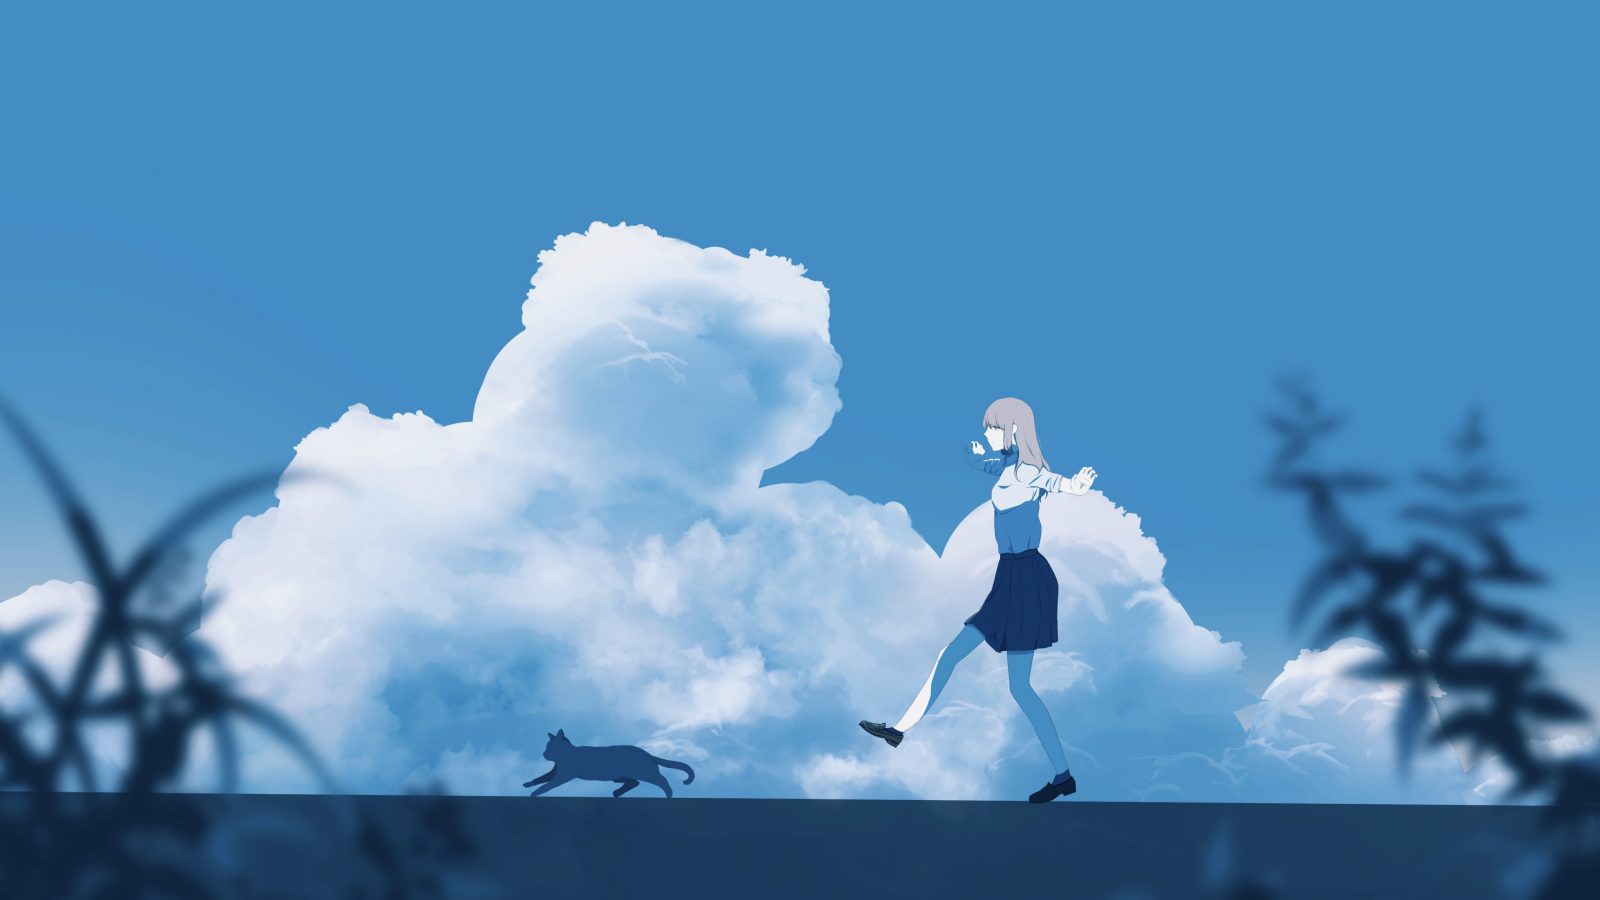 4096×2304 动漫女孩和猫 蓝天白云唯美风景壁纸